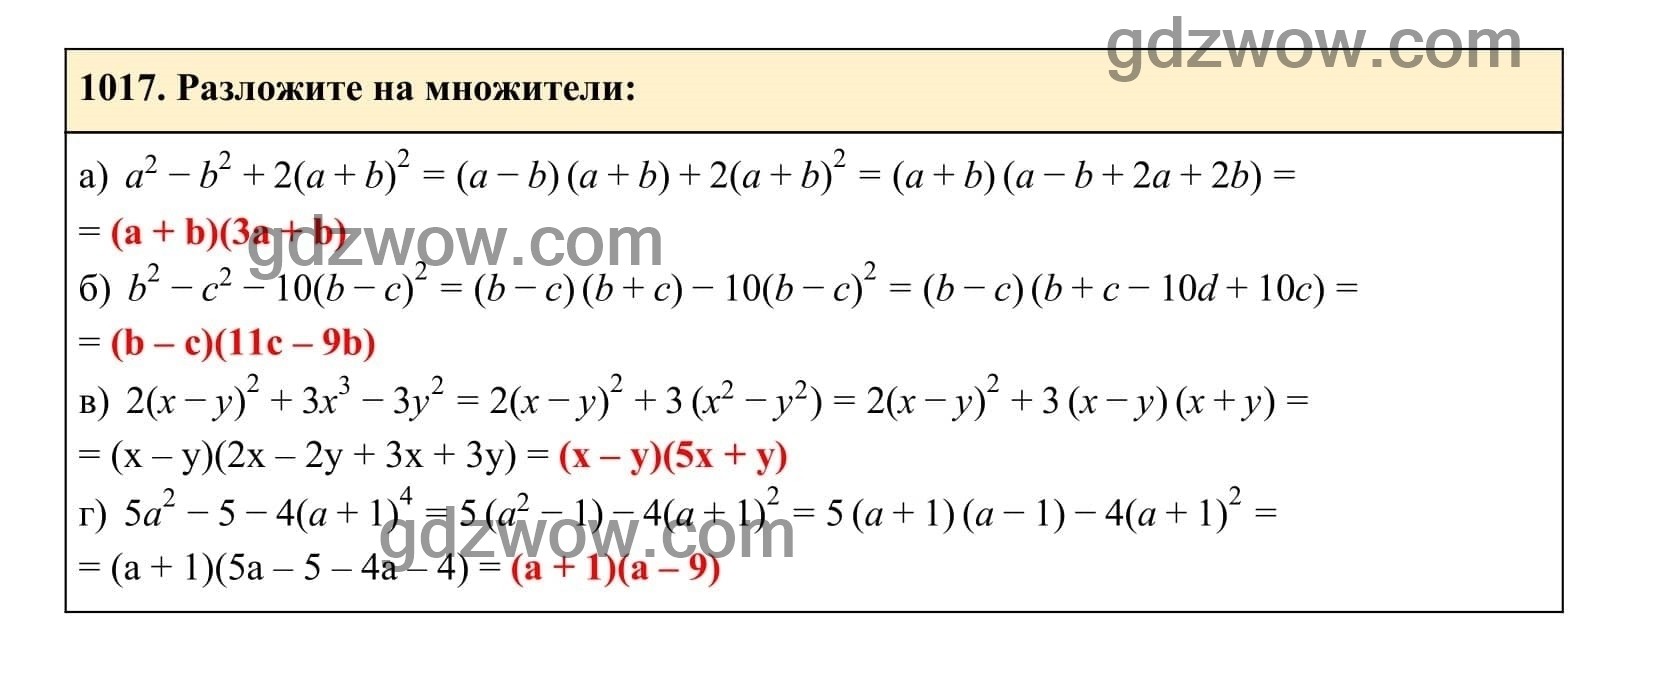 Упражнение 1017 - ГДЗ по Алгебре 7 класс Учебник Макарычев (решебник) - GDZwow